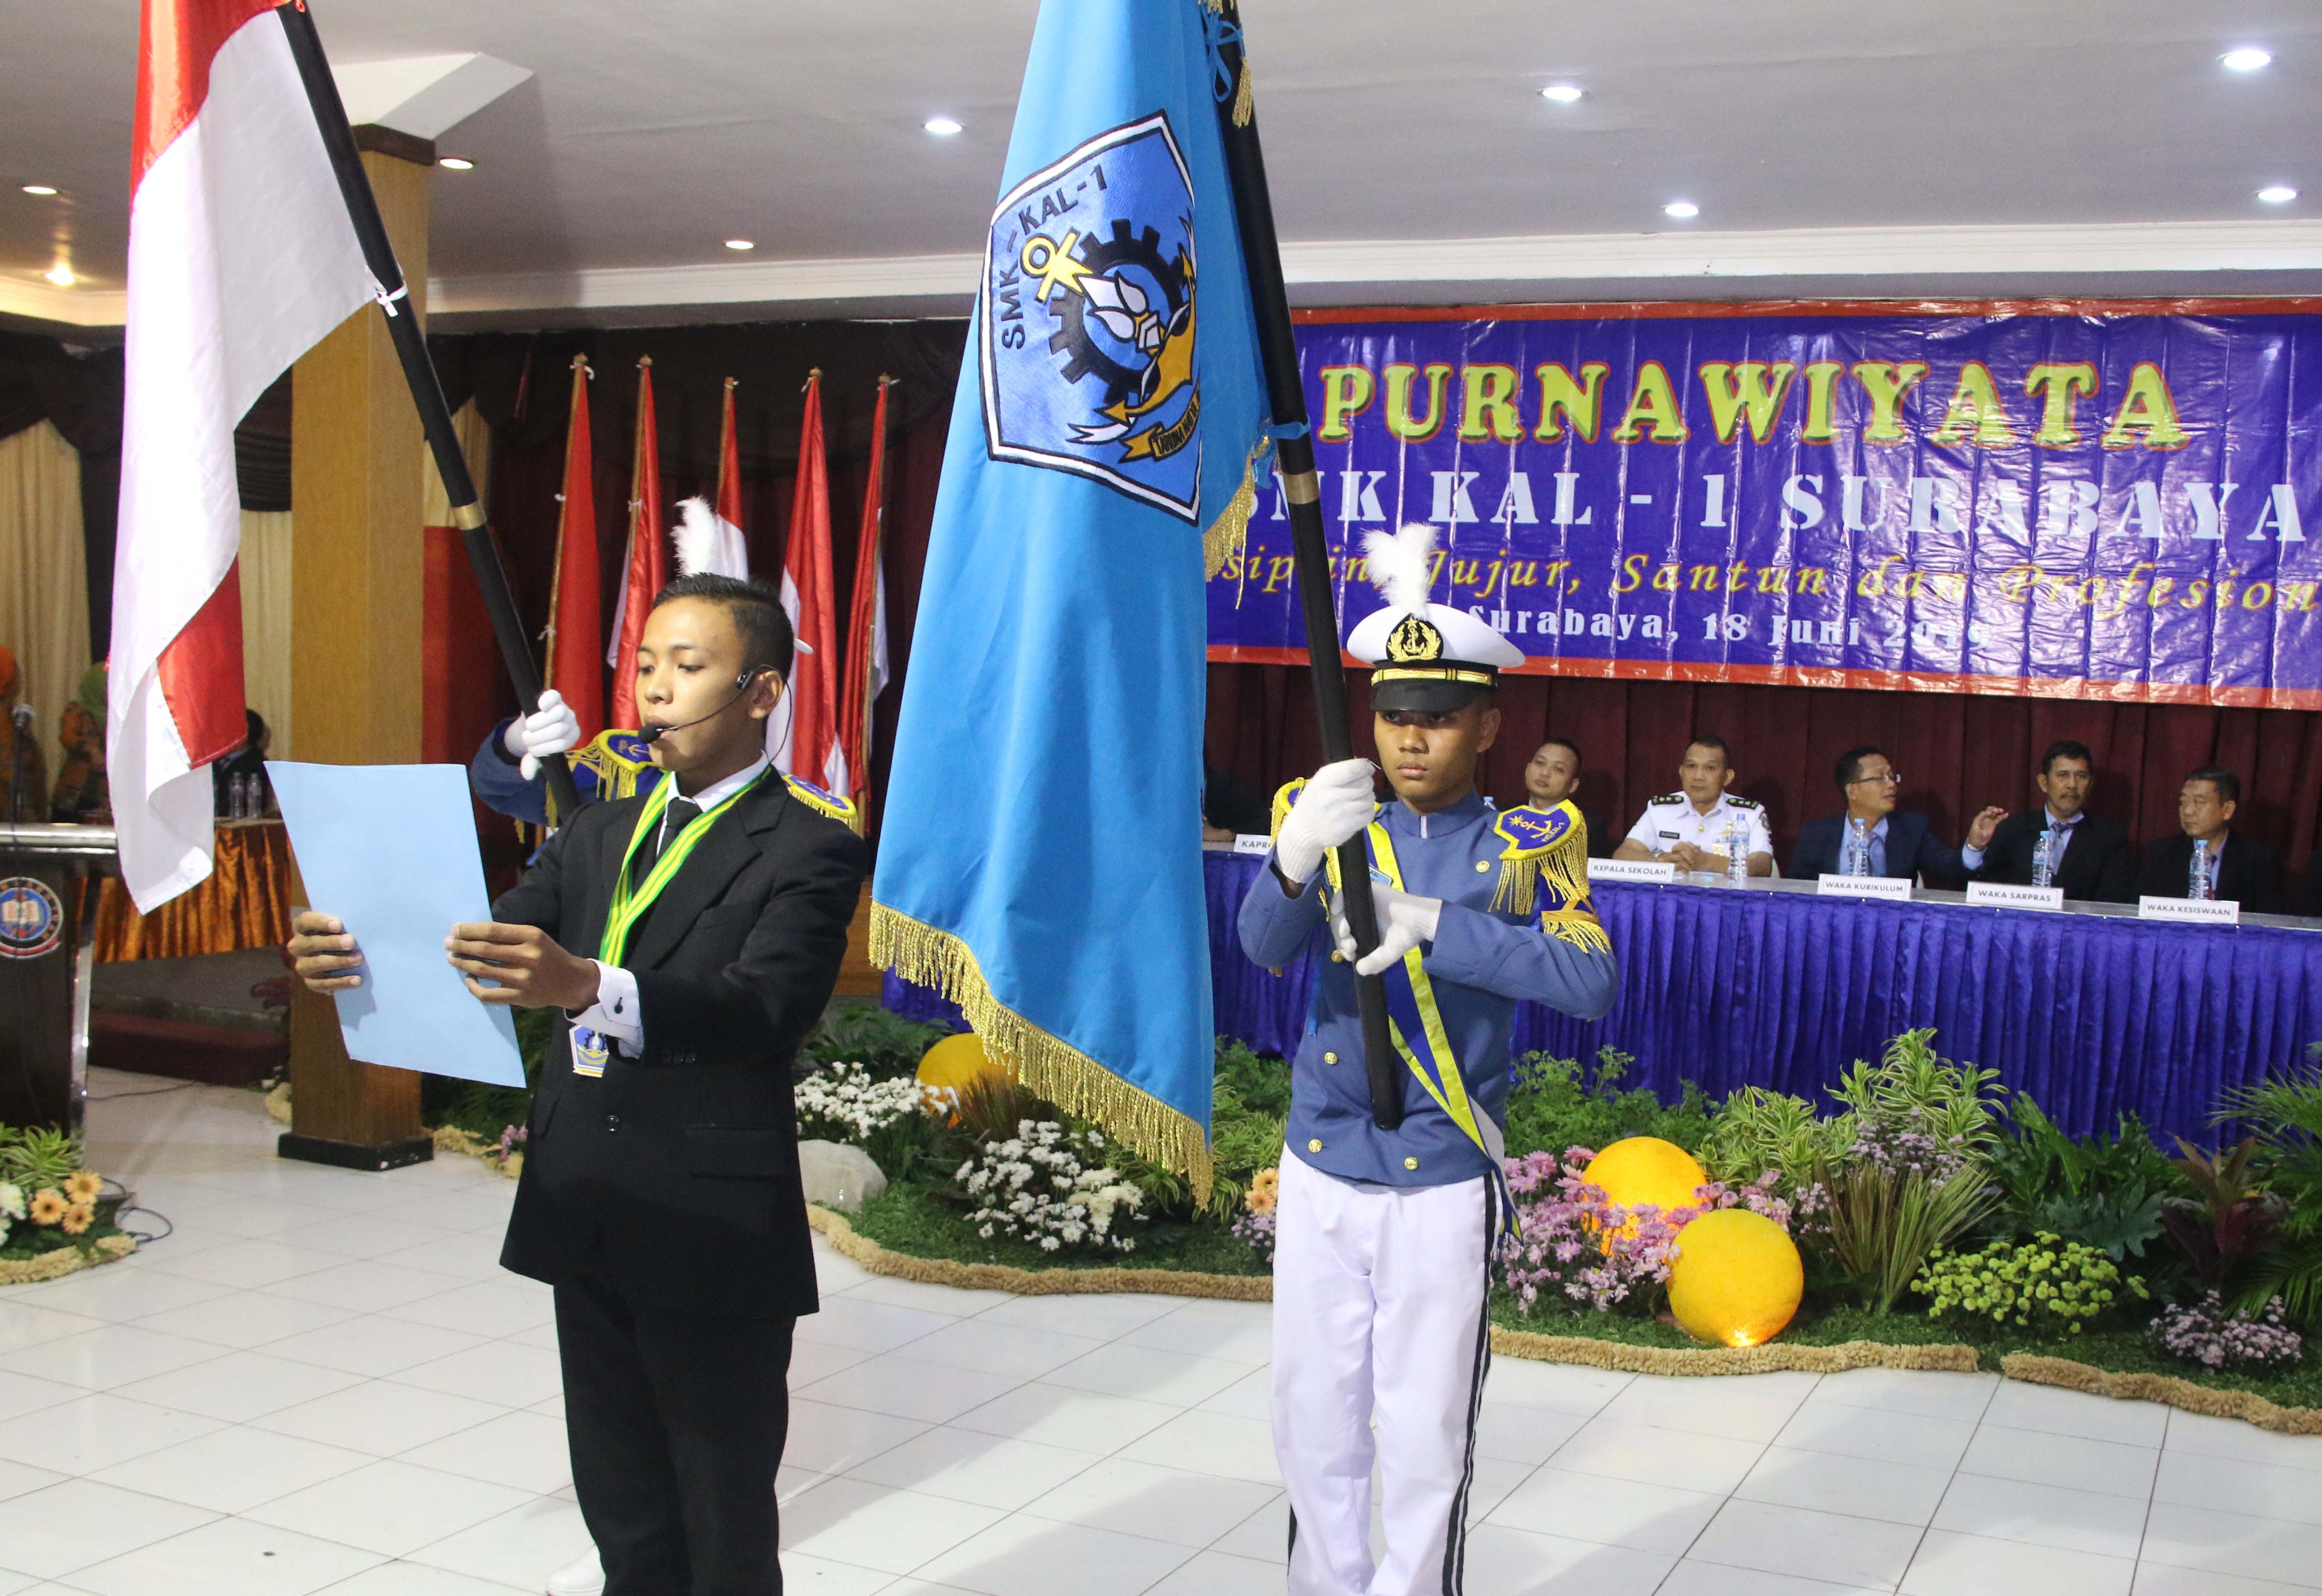 Perwakilan alumni yang baru saja dinyatakan lulus, membacakannjajni alumni SMK KAL-1 Surabaya saat berlangsungnya Purnawiyata/ penutupan pendidikan tahun pelajaran 2018/2019 